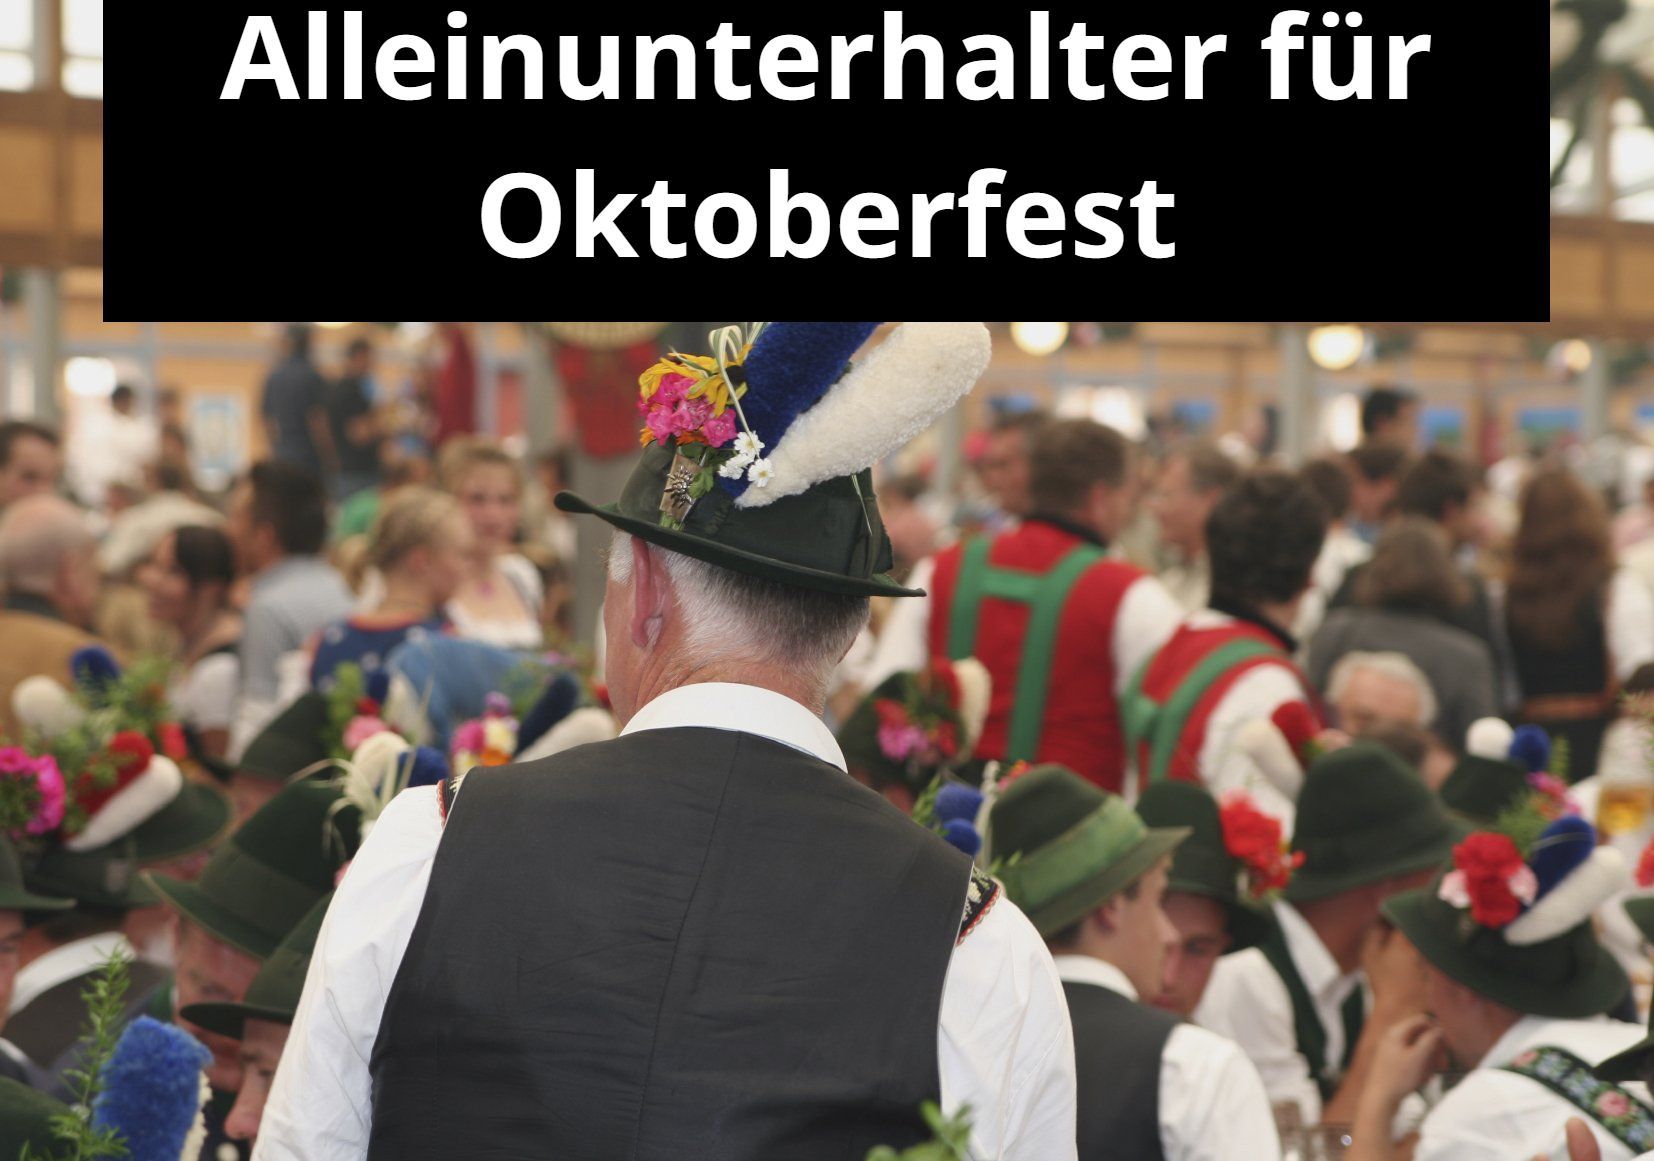 Alleinunterhalter für Oktoberfest im Kreis Heinsberg